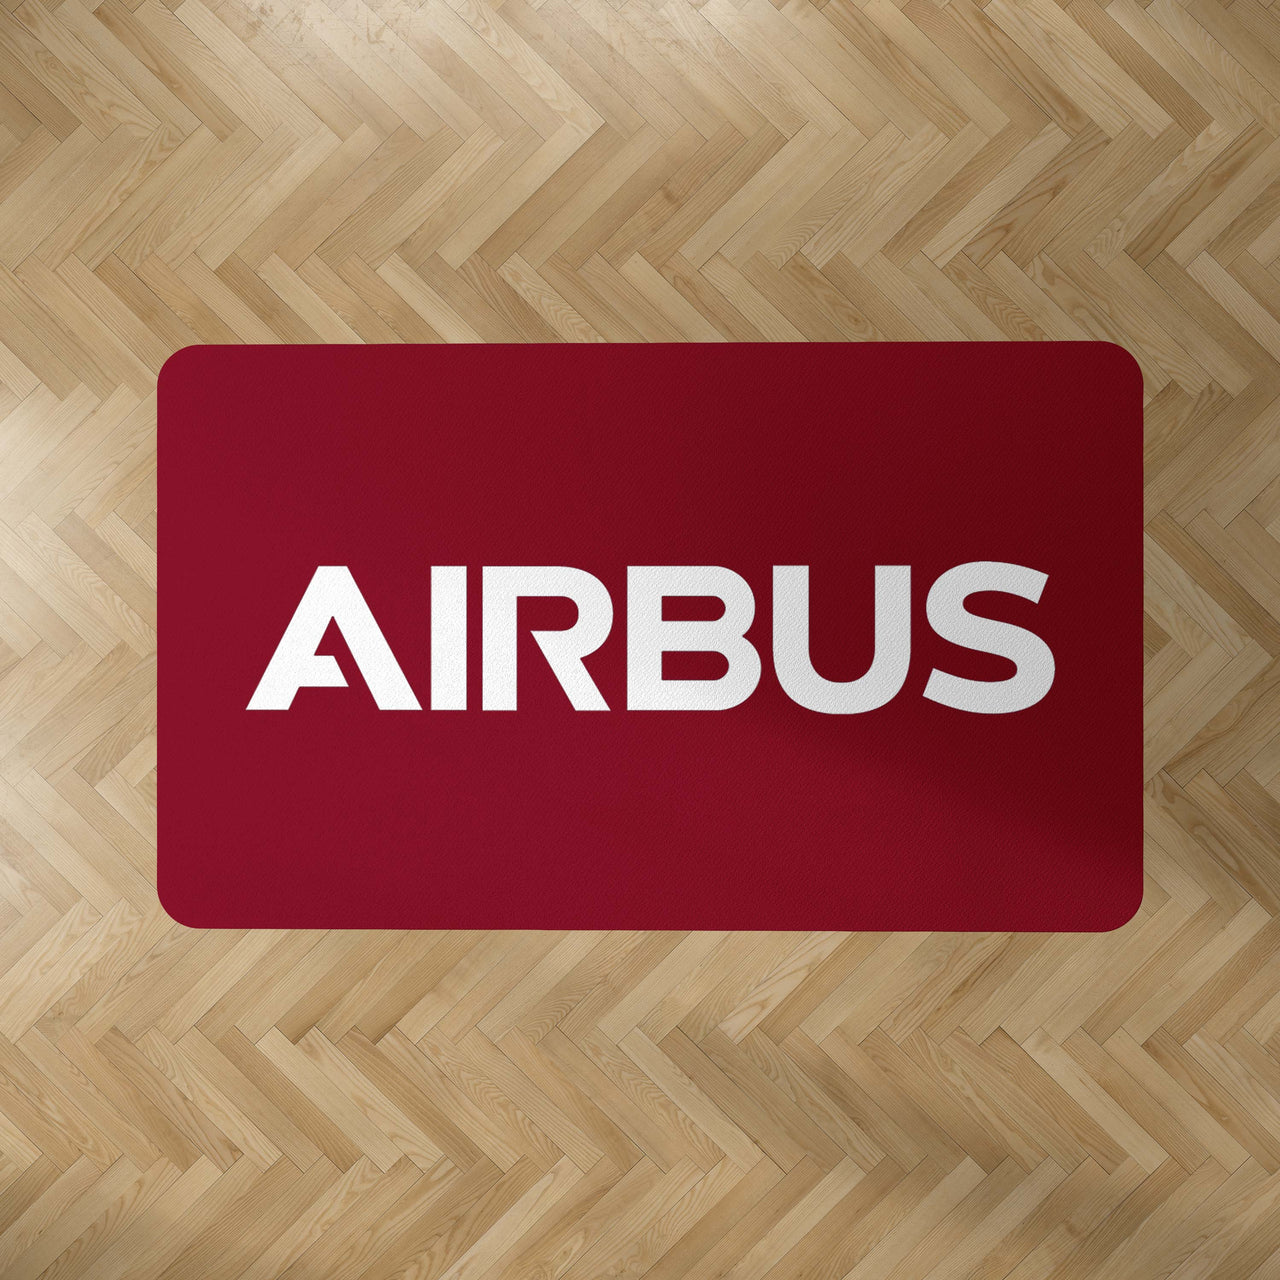 Airbus & Text Designed Carpet & Floor Mats